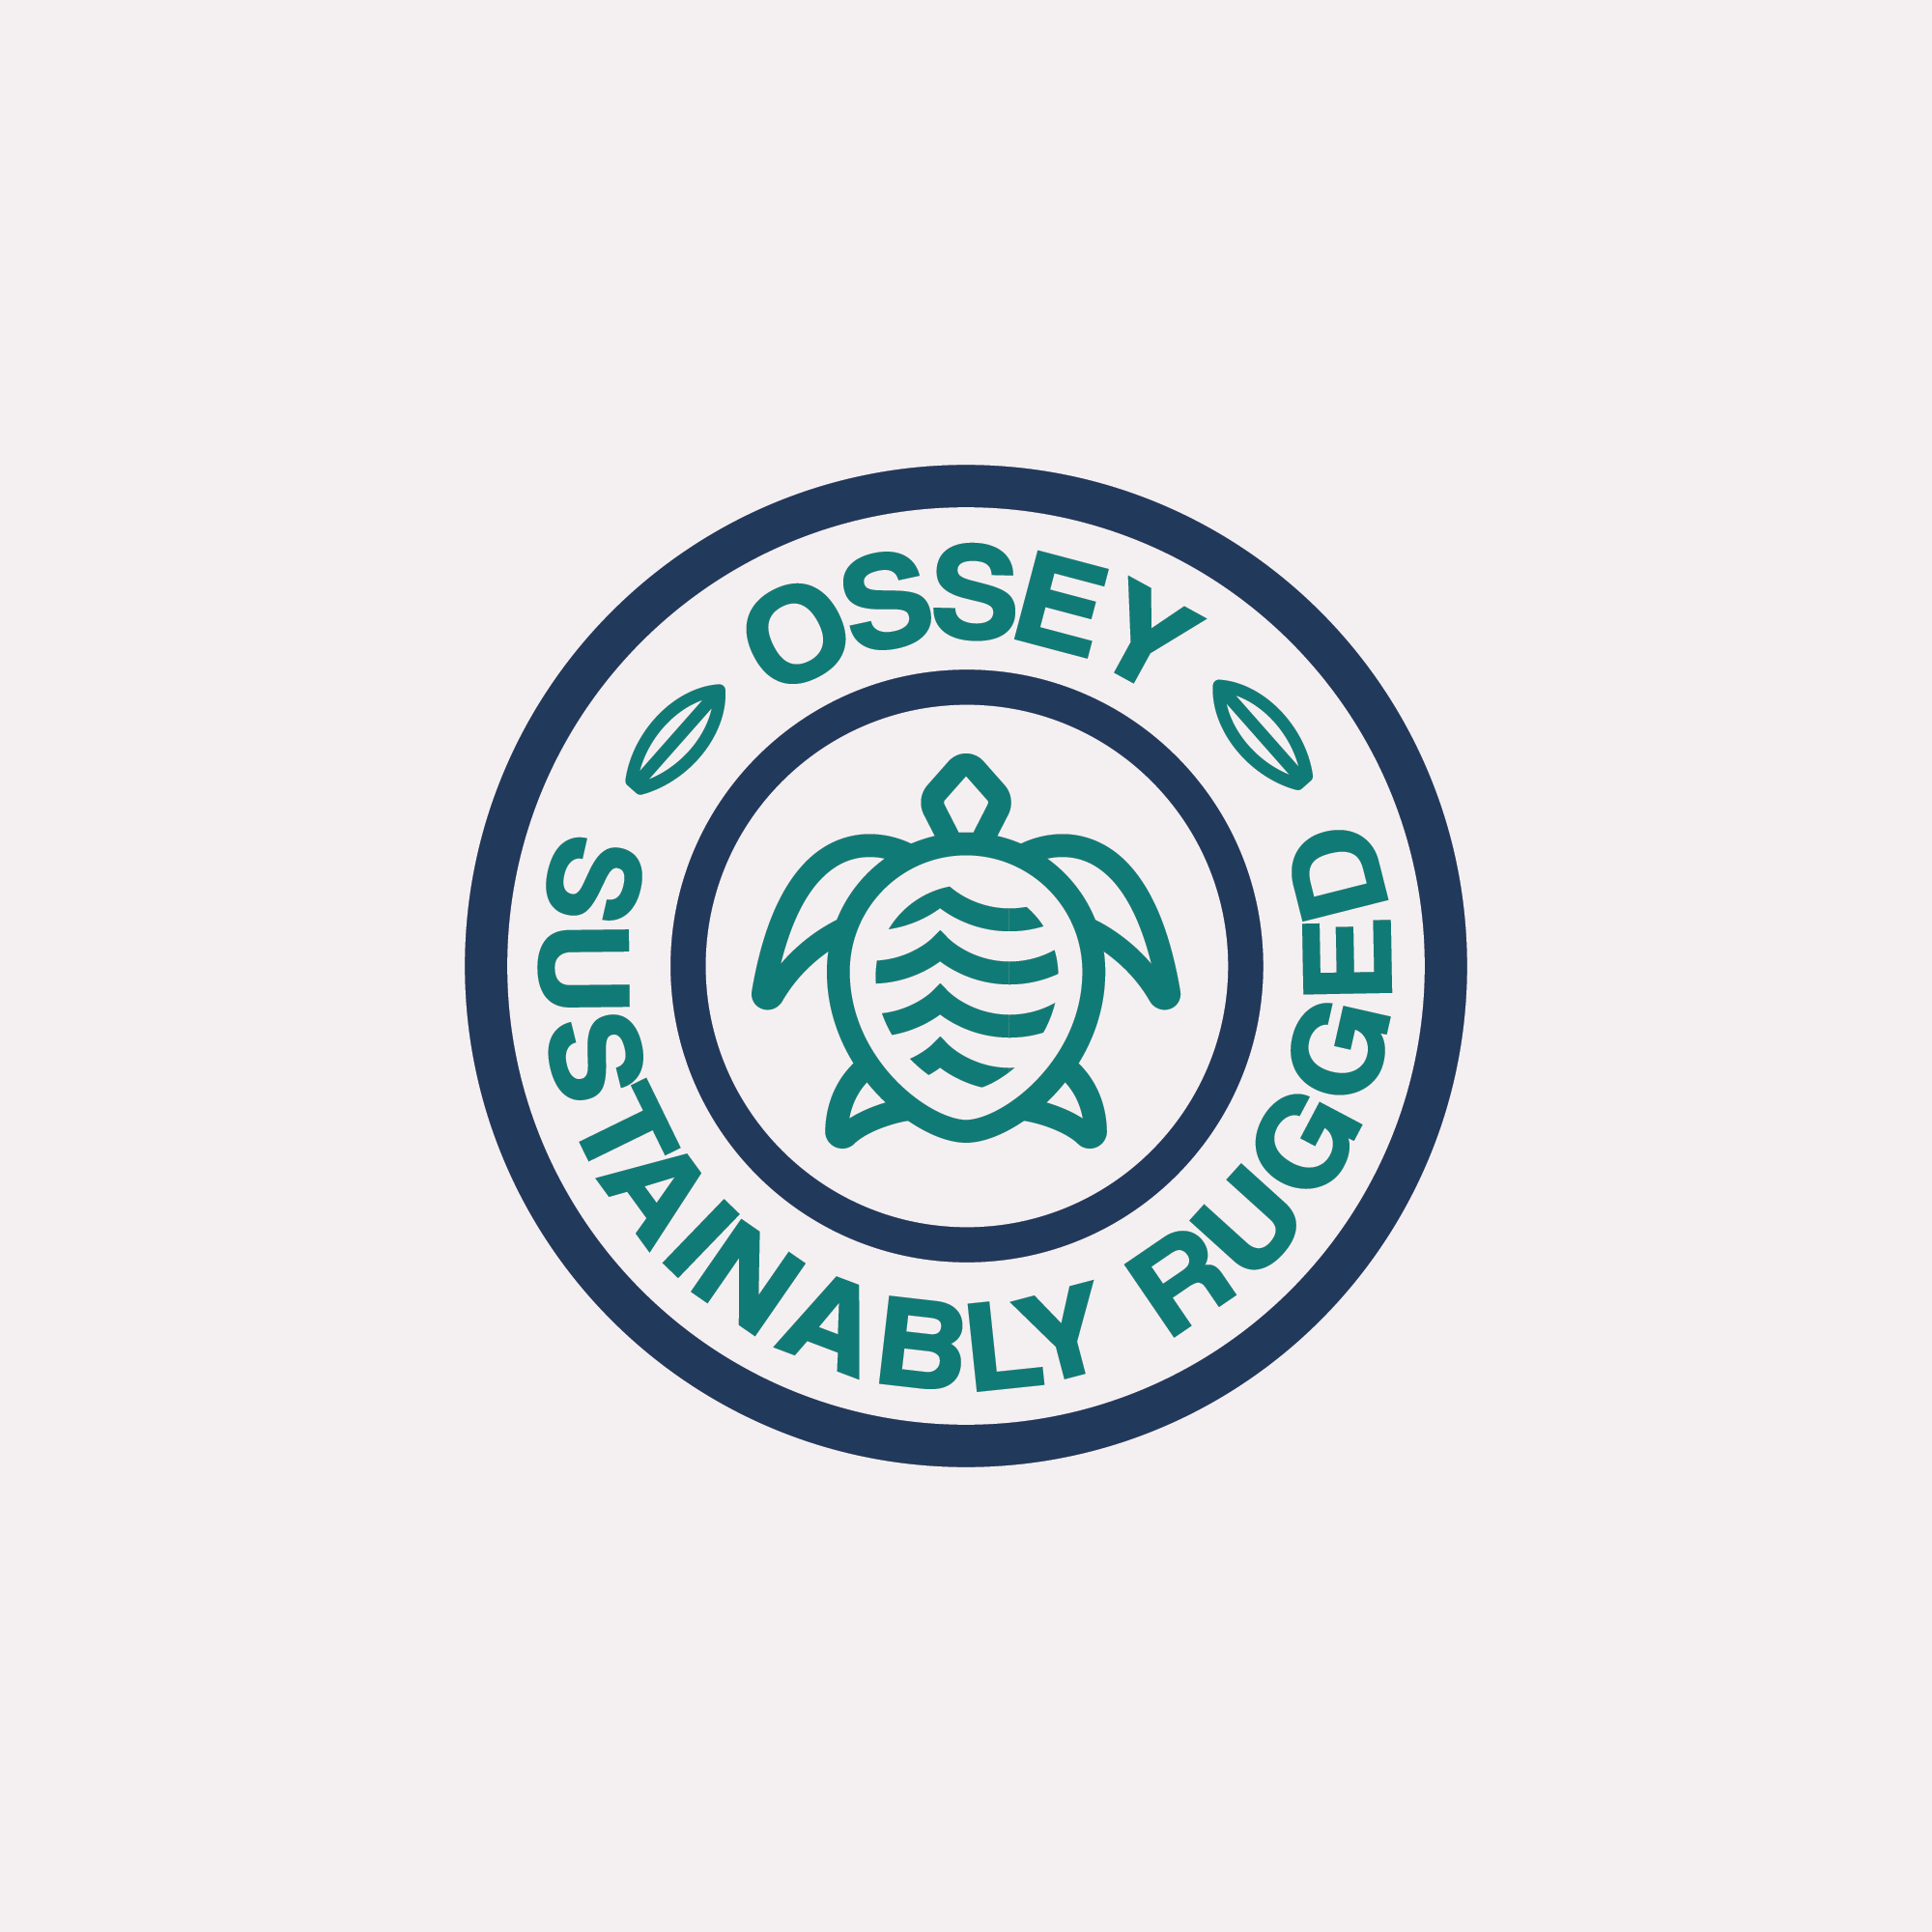 The Original Ossey Sticker